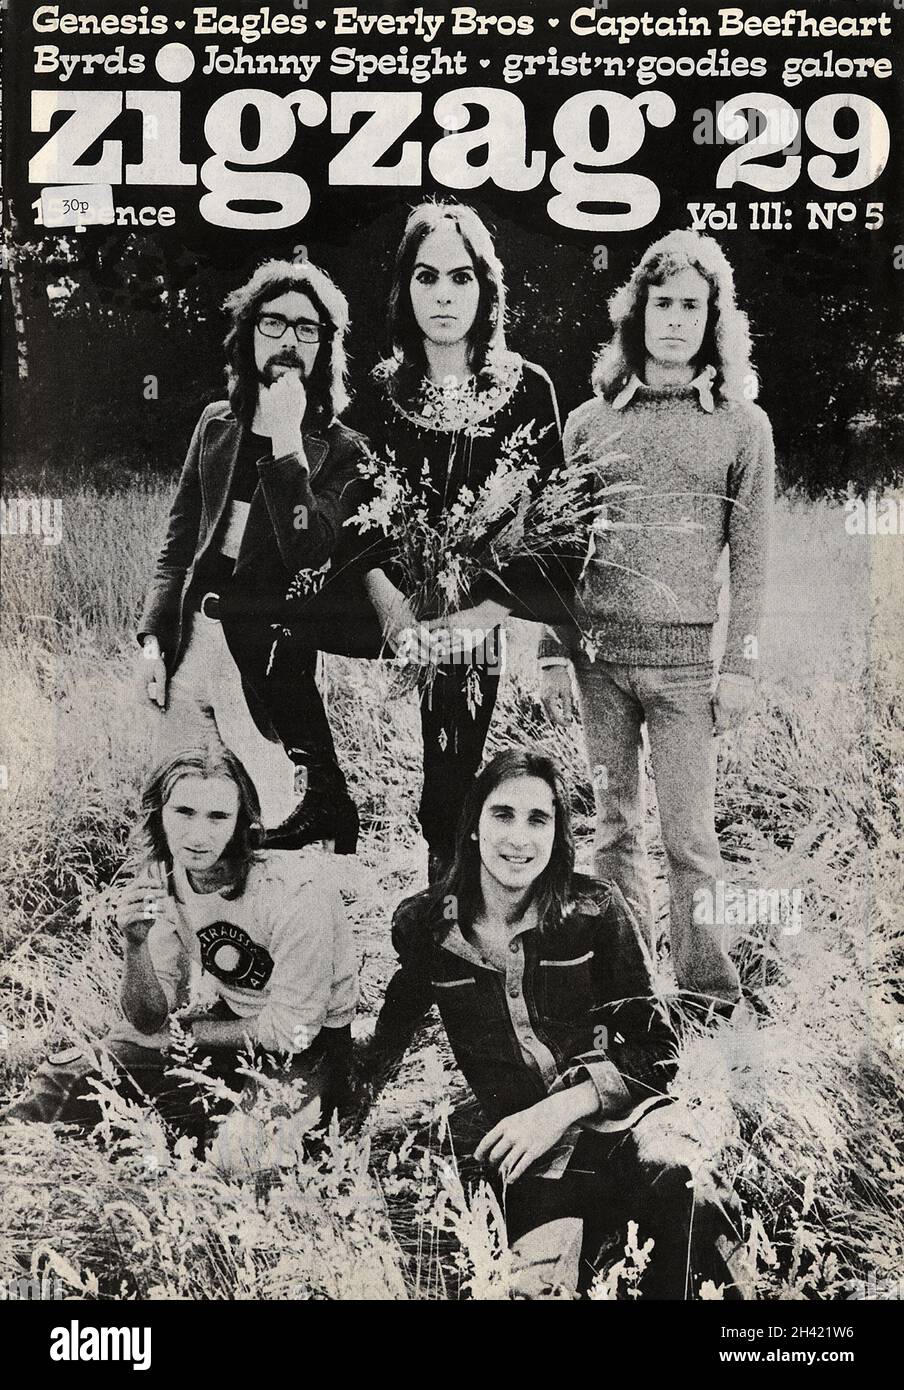 Ediciones raras de la revista británica pionera de rock Zig Zag de los años setenta, con estrellas de cubierta Pink Floyd, Genesis, The Byrds, Jerry Garcia. Esta fue la primera revista tan seria en cubrir muchas de estas bandas en profundidad, fuera de la prensa musical semanal normal. Pete Frame hizo mucho trabajo para el título. Foto de stock